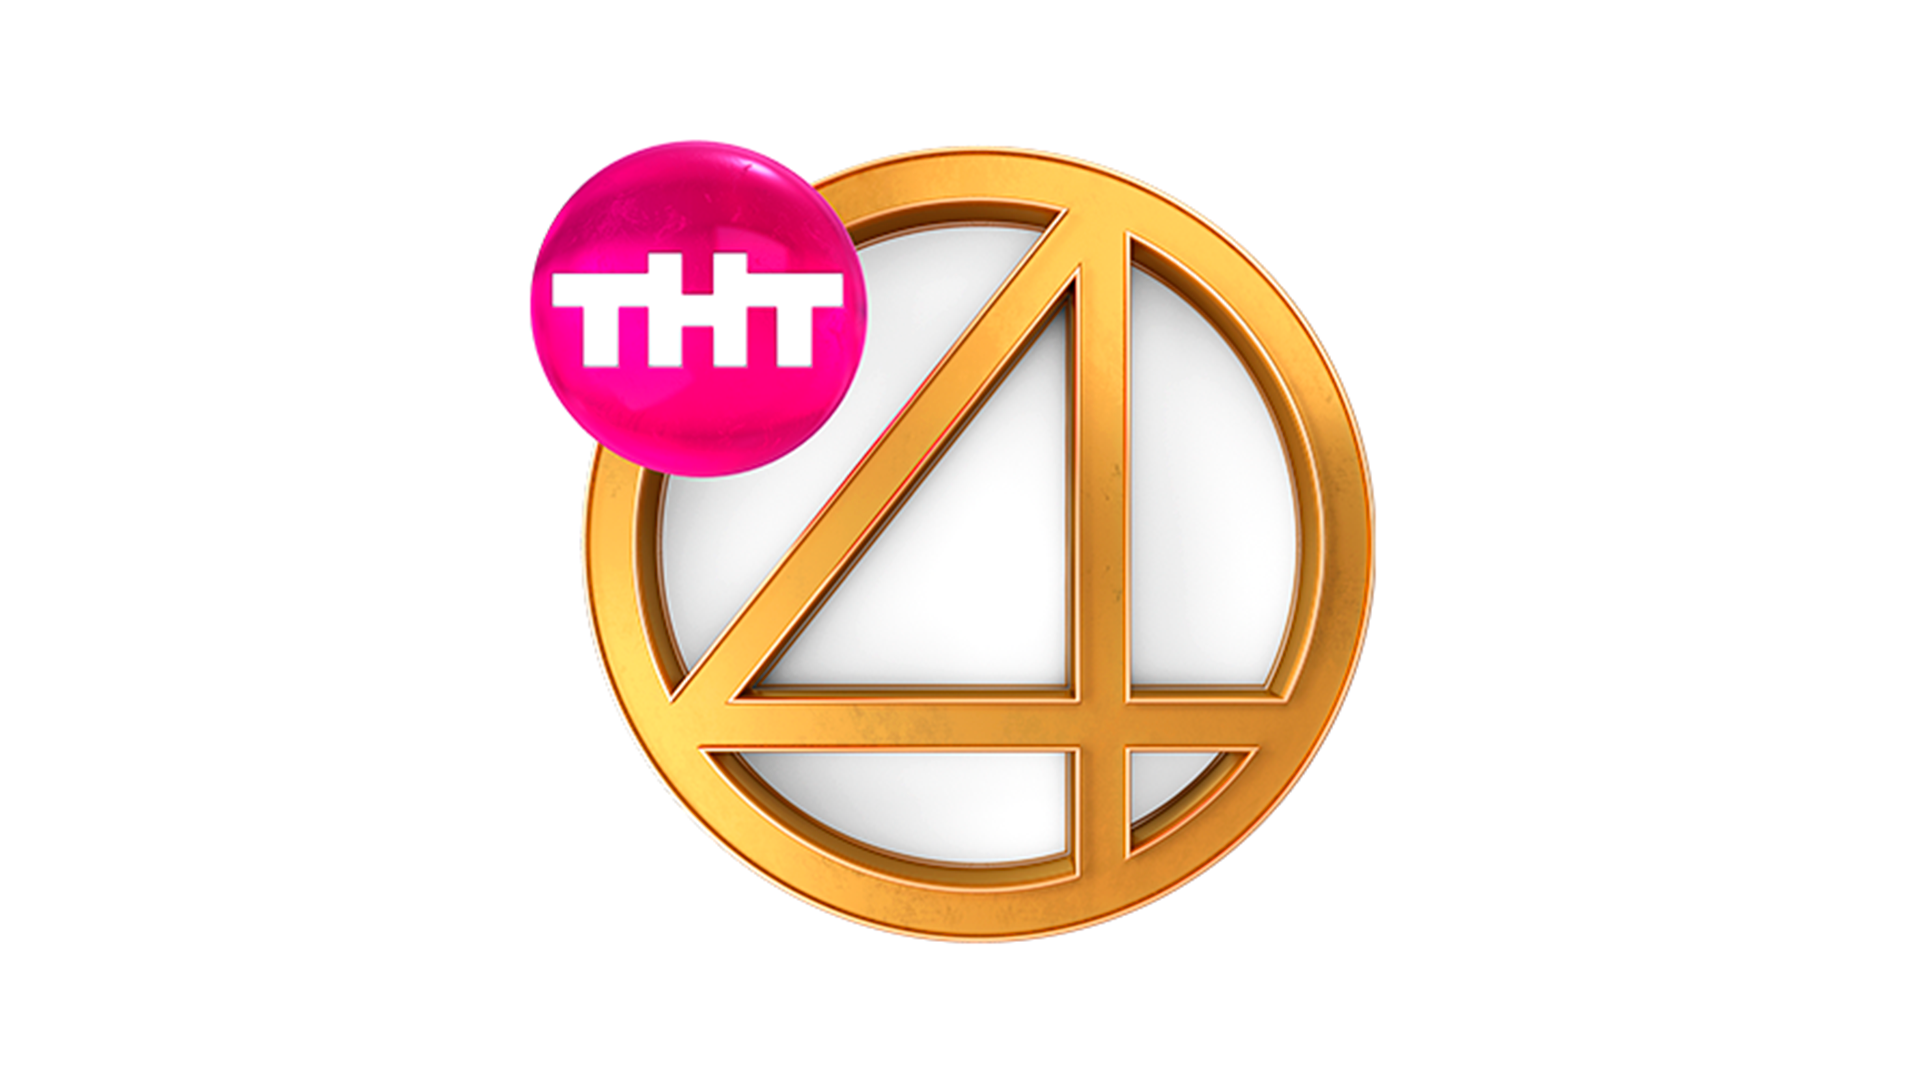 Тнт иви. Телеканал ТНТ 4 новый логотип. Четвёртый канал эмблема телеканала ТНТ 4. Логотип тнт4 2017-н.в. ТНТ 4 прямой эфир.